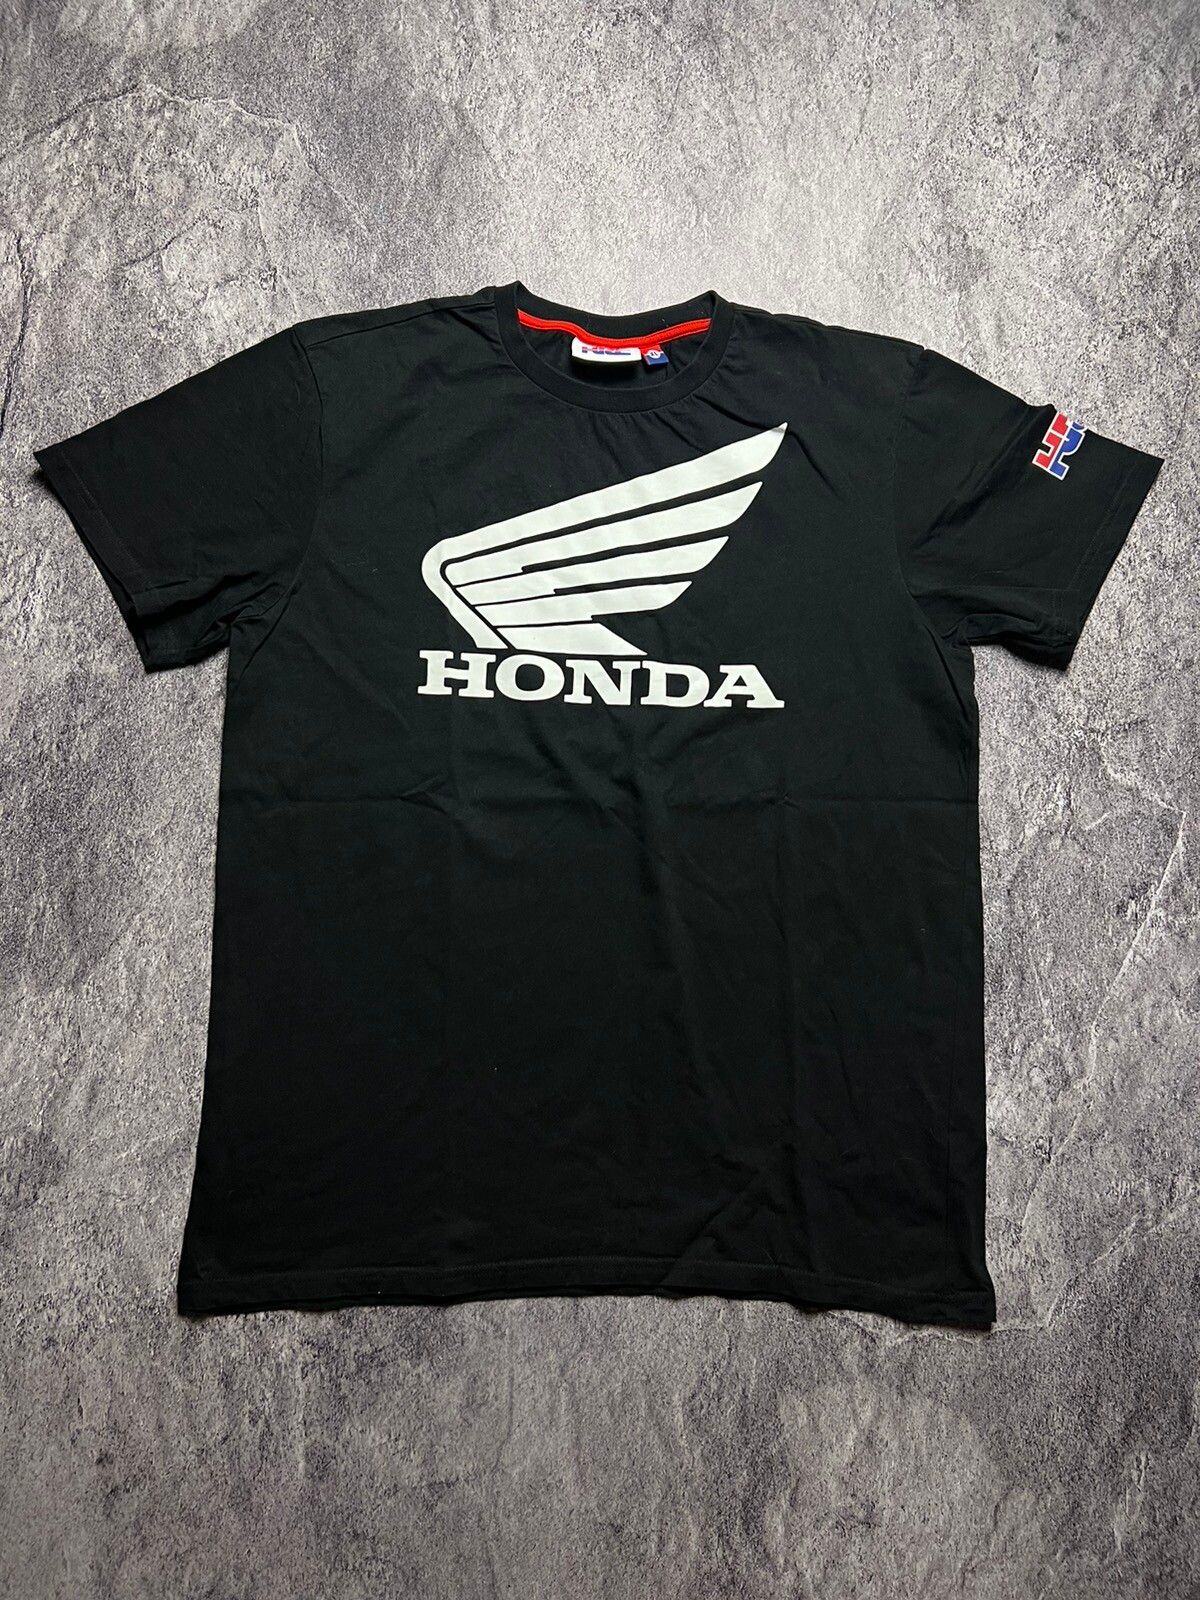 Pre-owned Honda X Racing Y2k Honda Toyota Jdm Vtec Racing Japan Style Racing Tee In Black